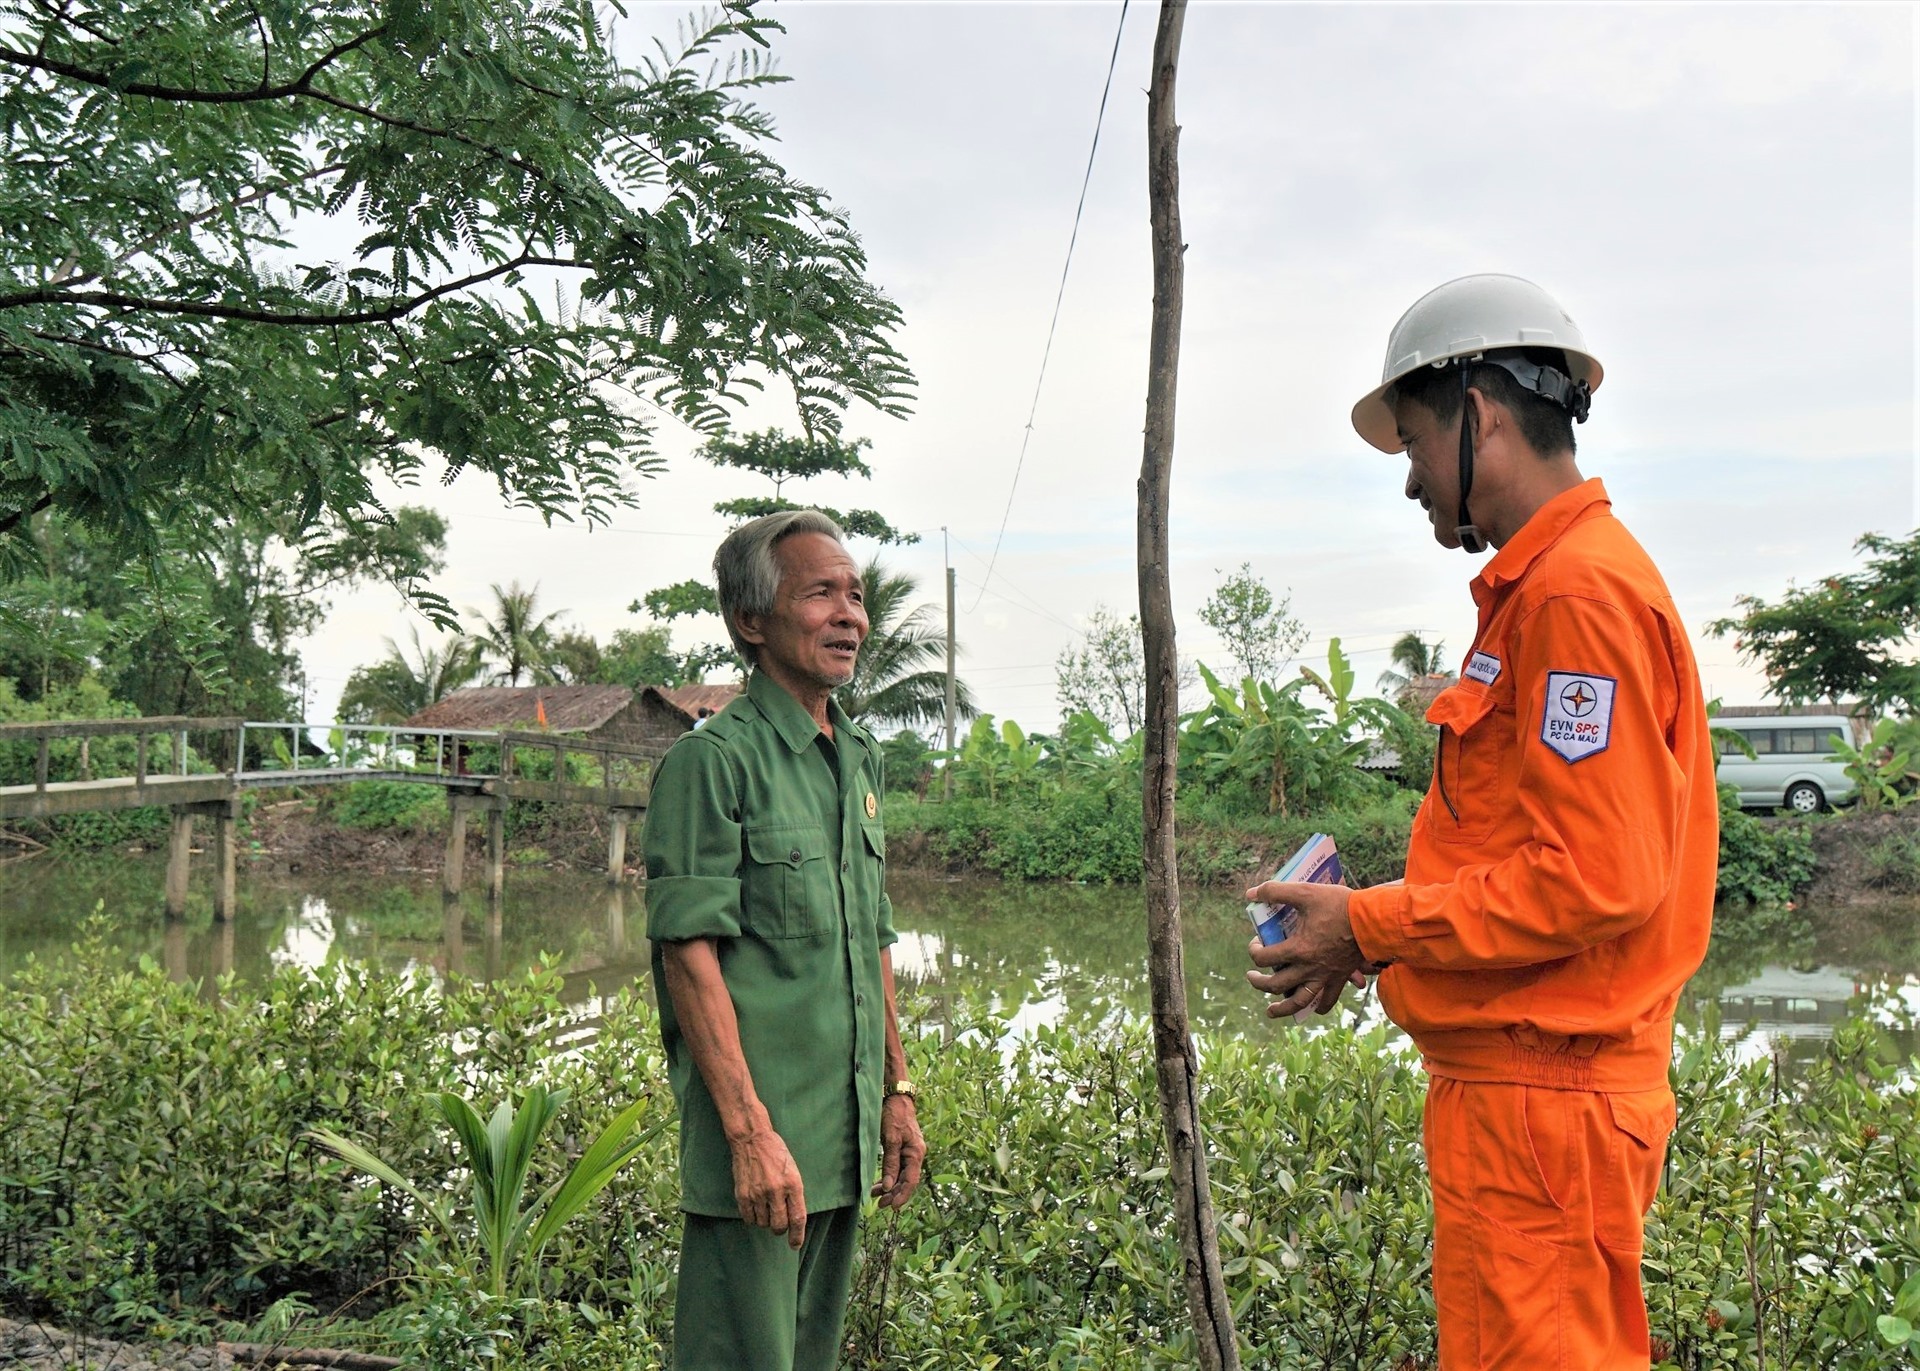 Nhân viên điện lực tuyên truyền, khuyến khích người dân vùng nông thôn tại xã Phong Lạc, huyện Trần Văn Thời, tỉnh Cà Mau, sử dụng điện an toàn sau điện kế nhằm giảm thiểu tai nạn điện. Ảnh EVNSPC cung cấp.